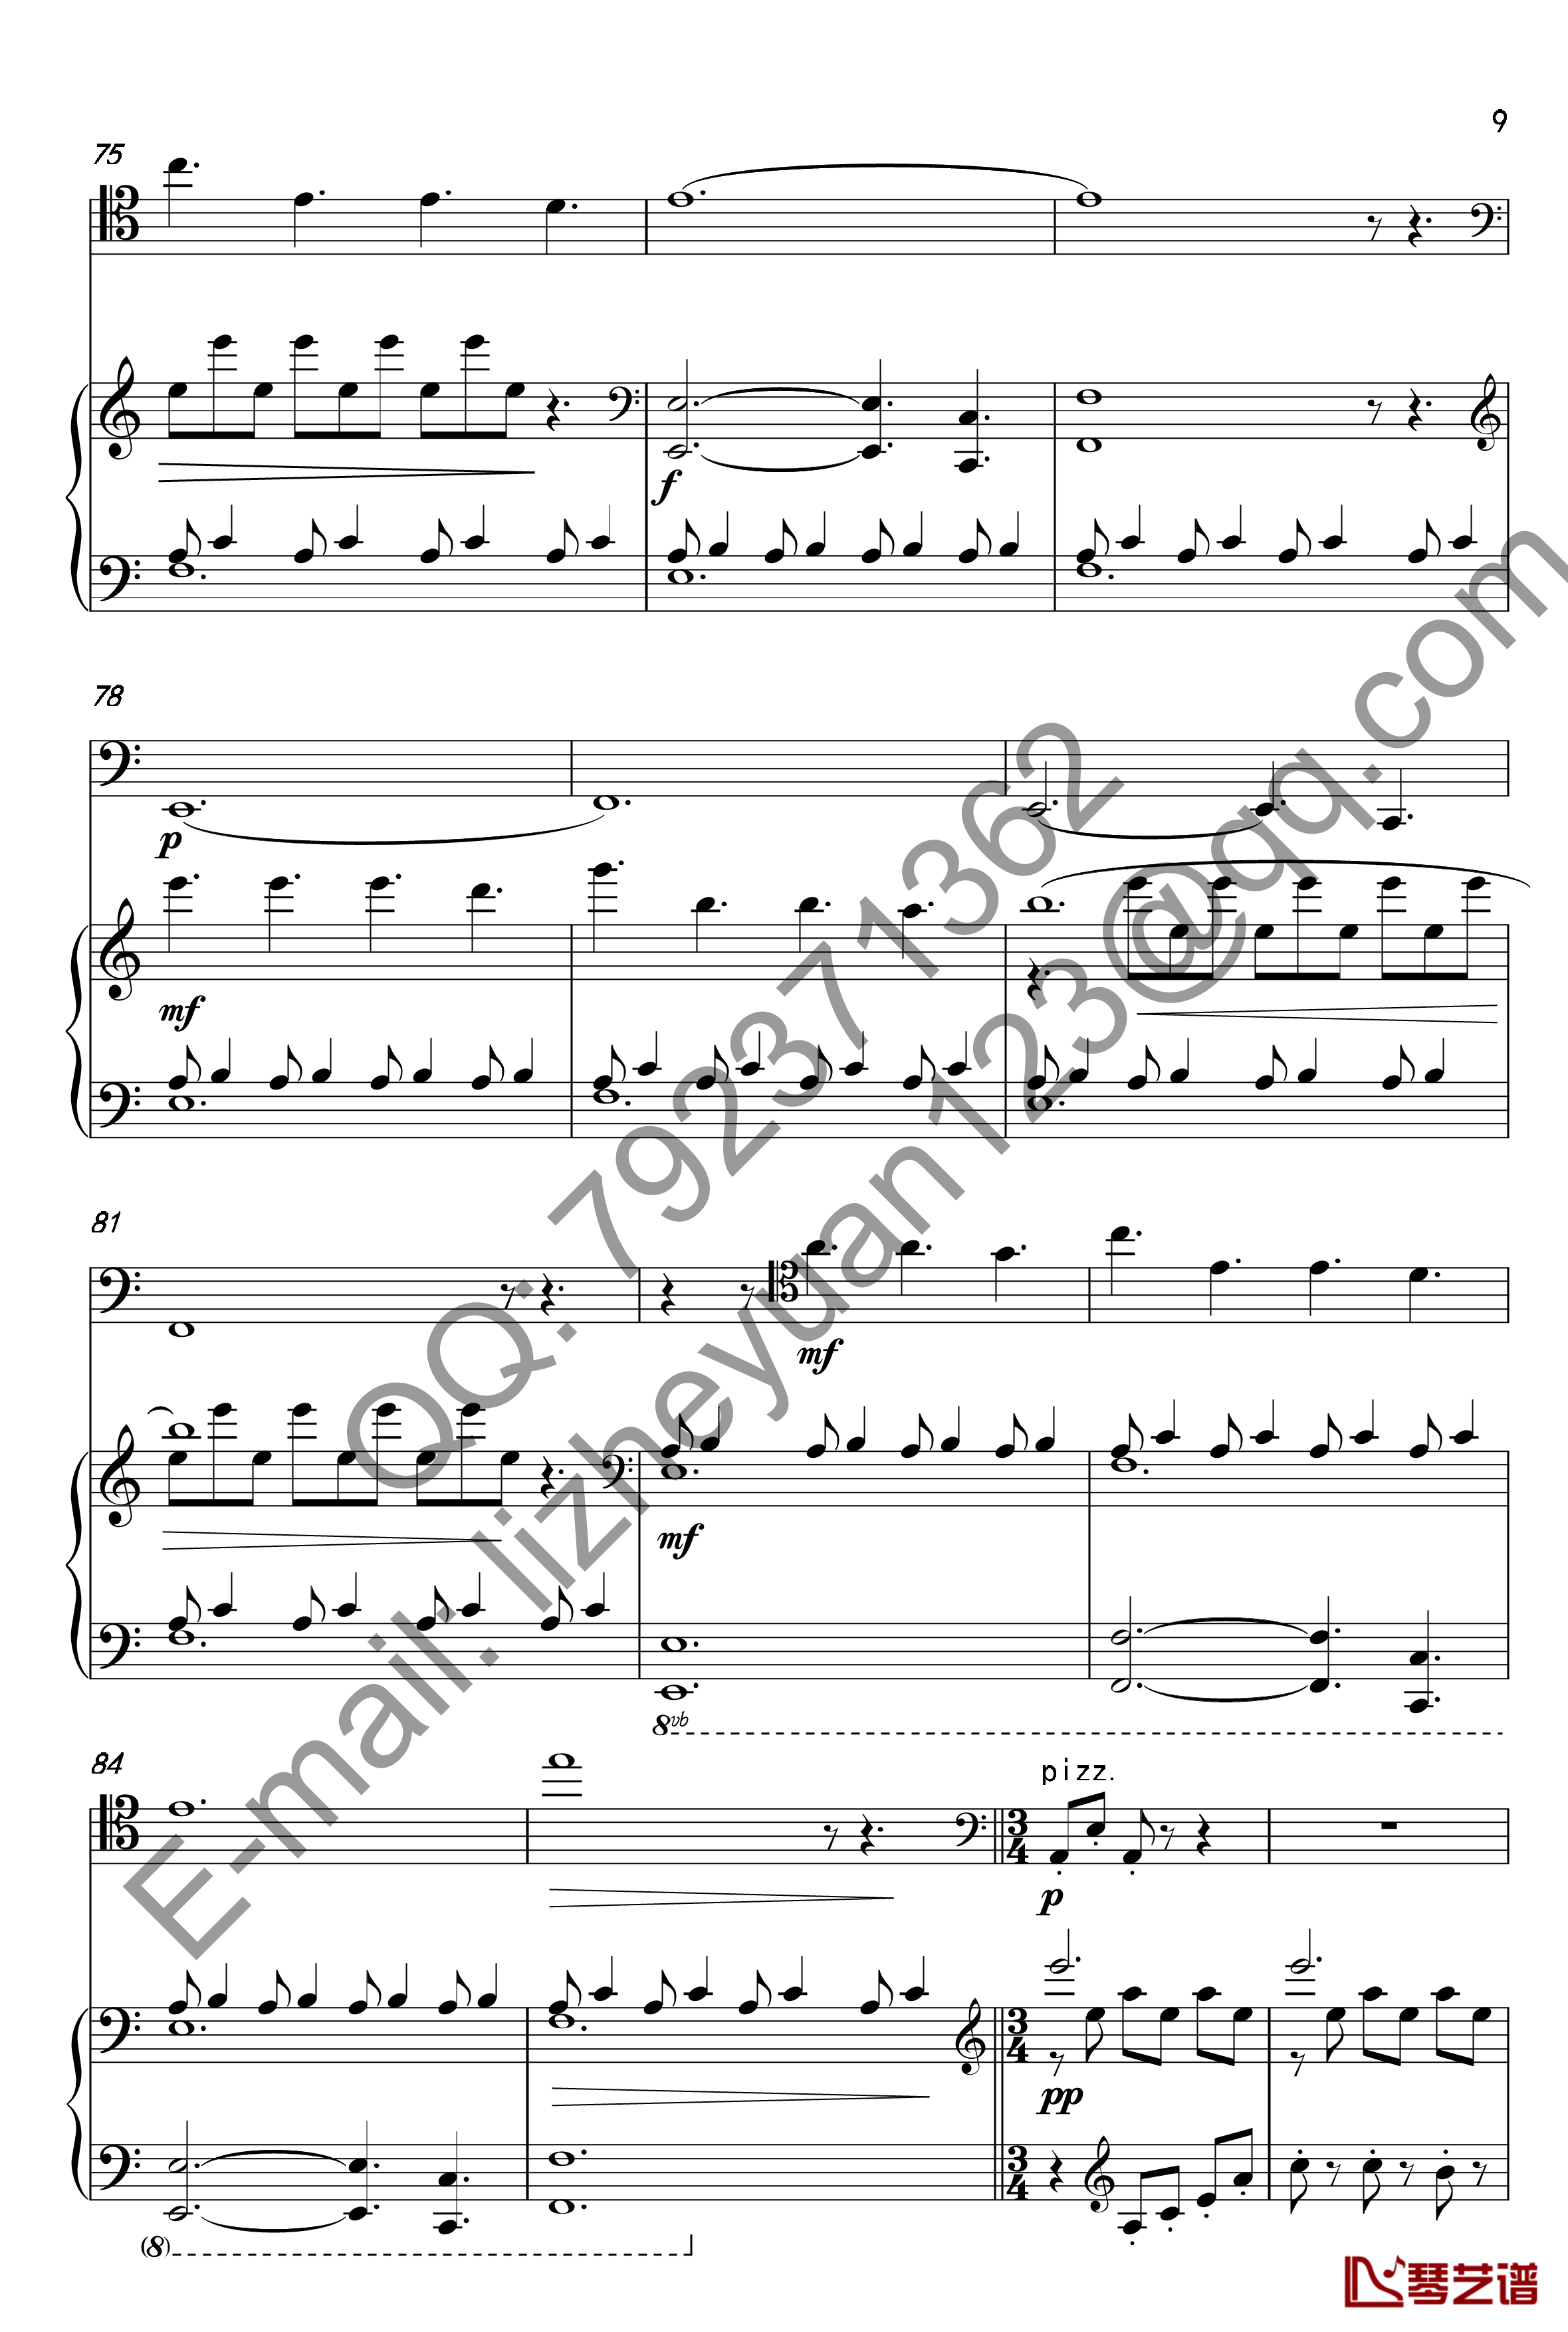 唐顿庄园主题曲钢琴谱-钢琴+大提琴-唐顿庄园9